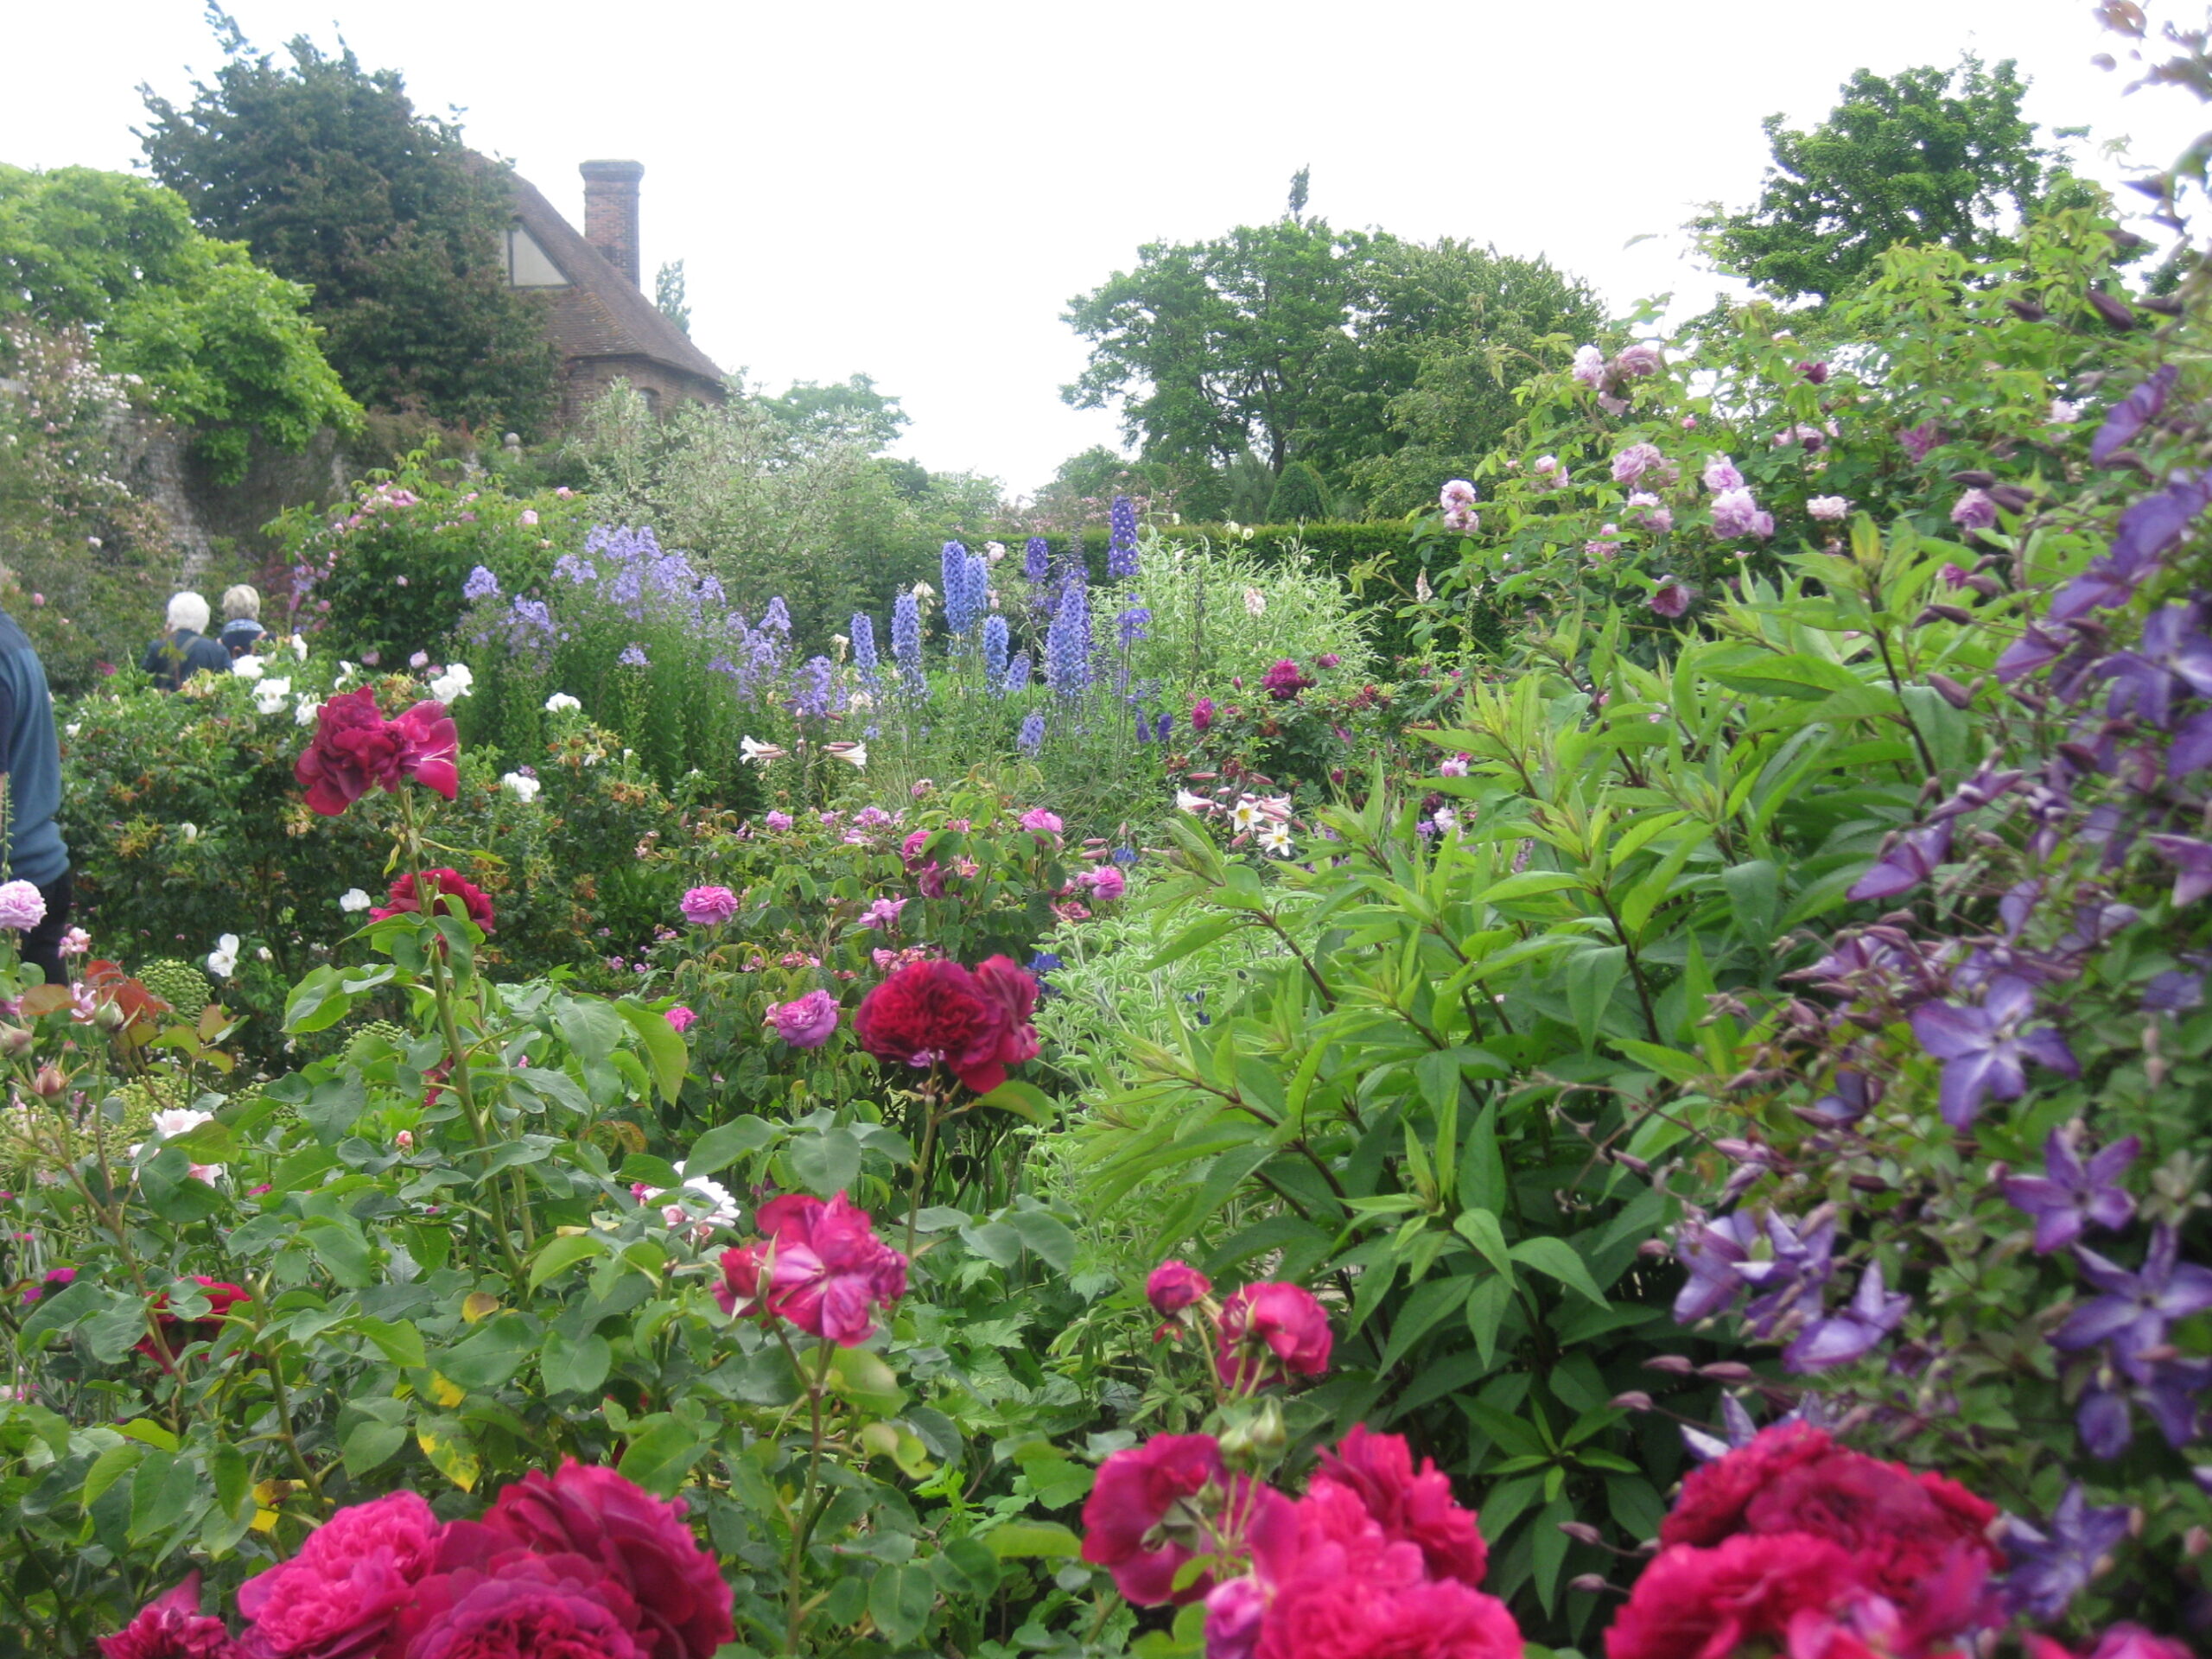 Sissinghurt rose garden